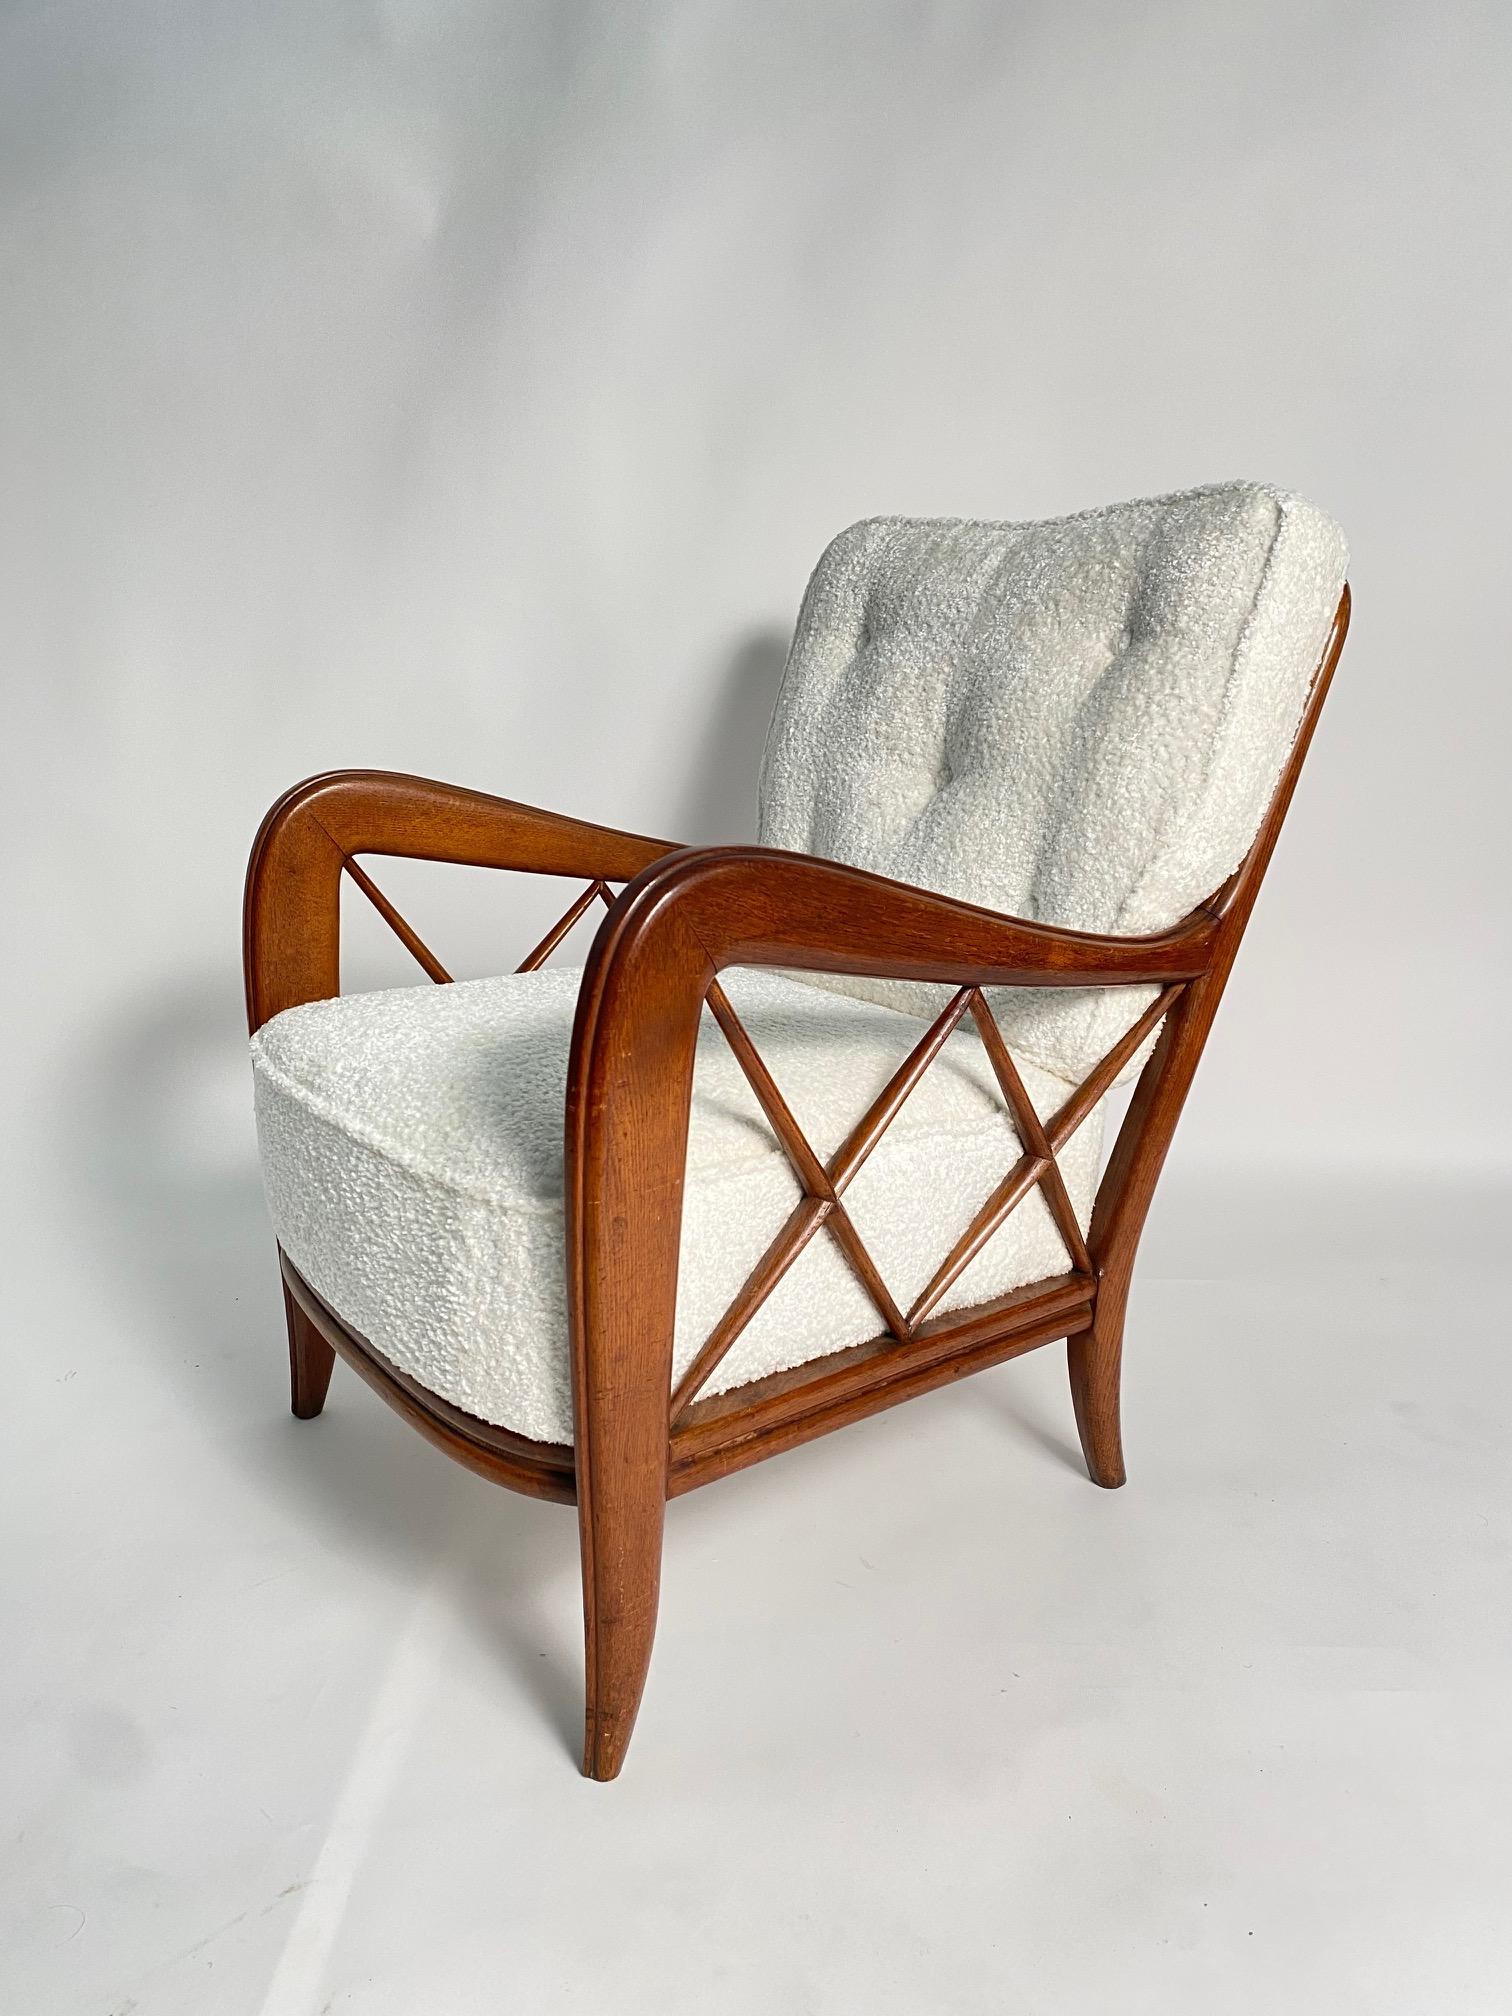 Paar Sessel aus der Mitte des Jahrhunderts im Stil von Paolo Buffa, Italien

Ein sehr elegantes Paar italienischer Sessel aus den 1950er Jahren mit polierter Massivholzstruktur und Stoffkissen, eine ikonische und sehr raffinierte Form, die sich gut